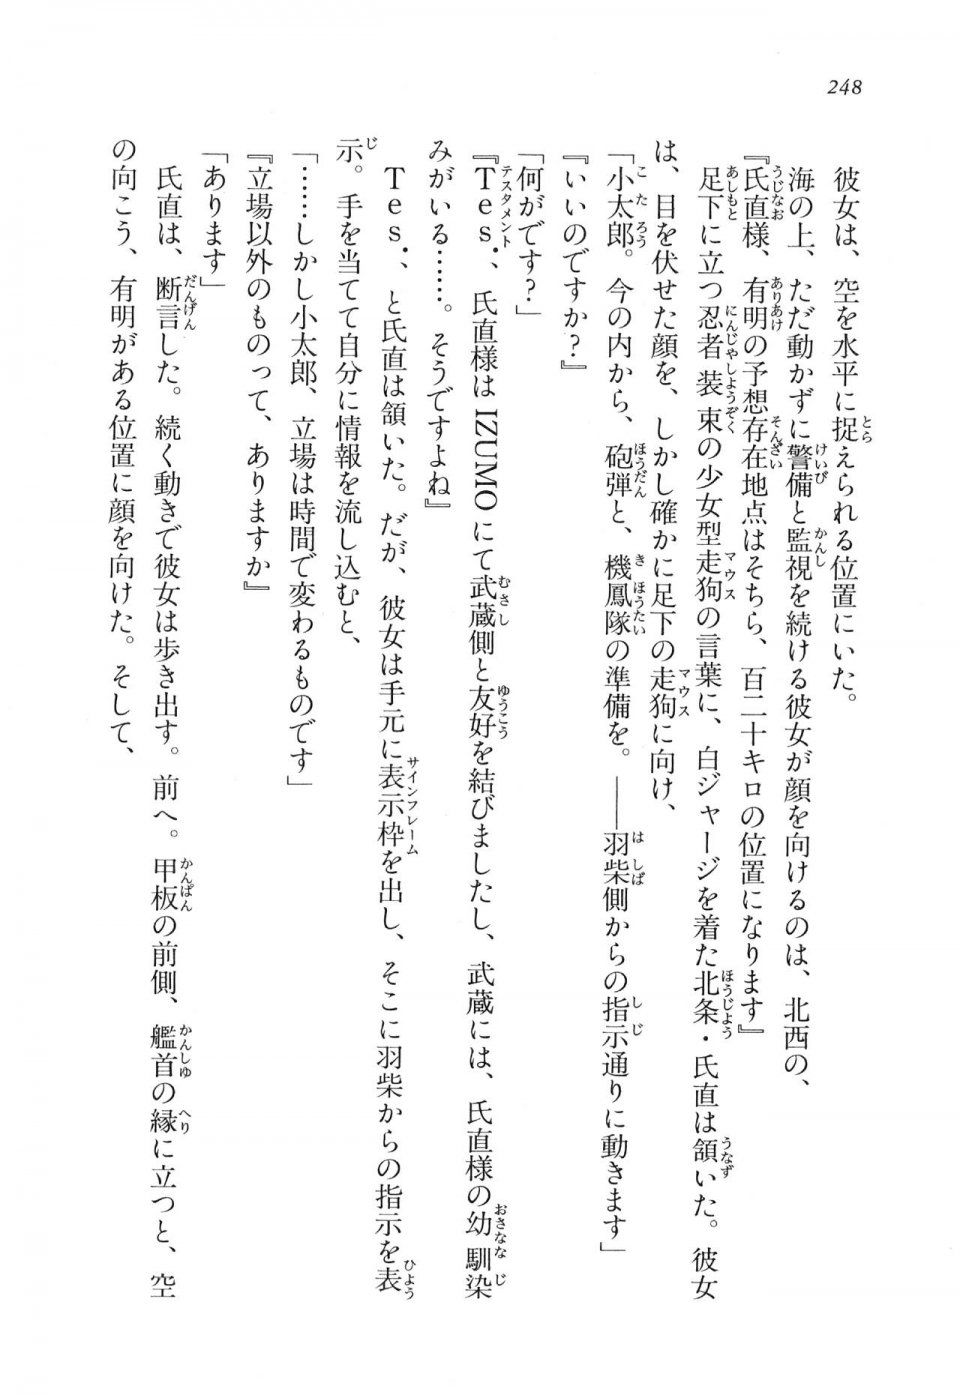 Kyoukai Senjou no Horizon LN Vol 11(5A) - Photo #248